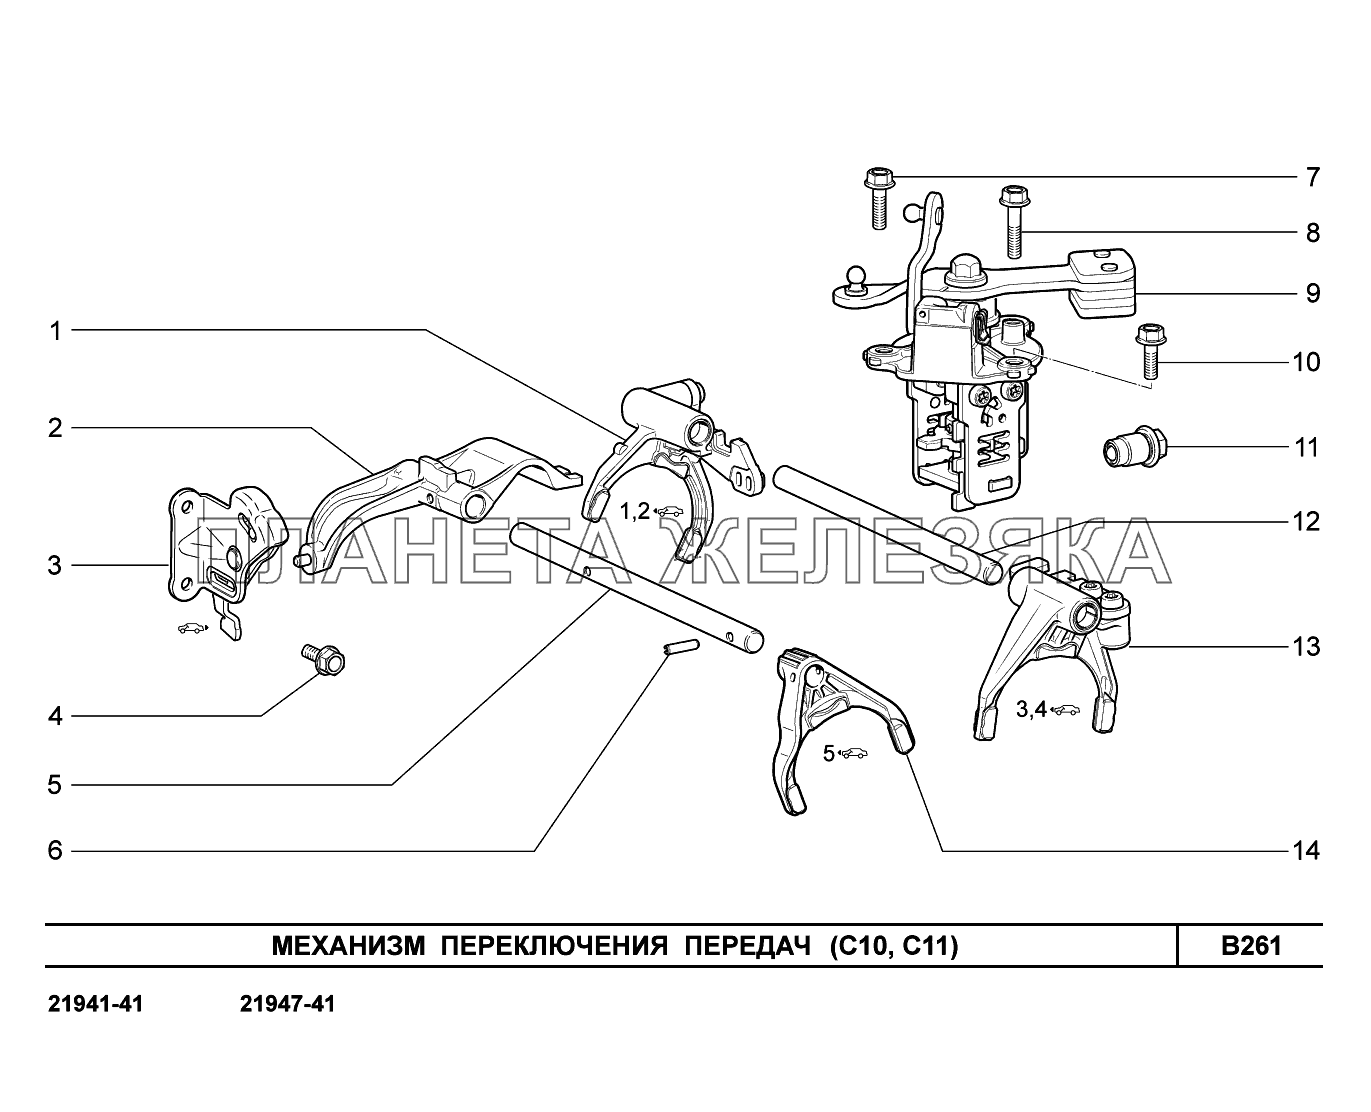 B261. Механизм выбора и переключения передач Lada Kalina New 2194